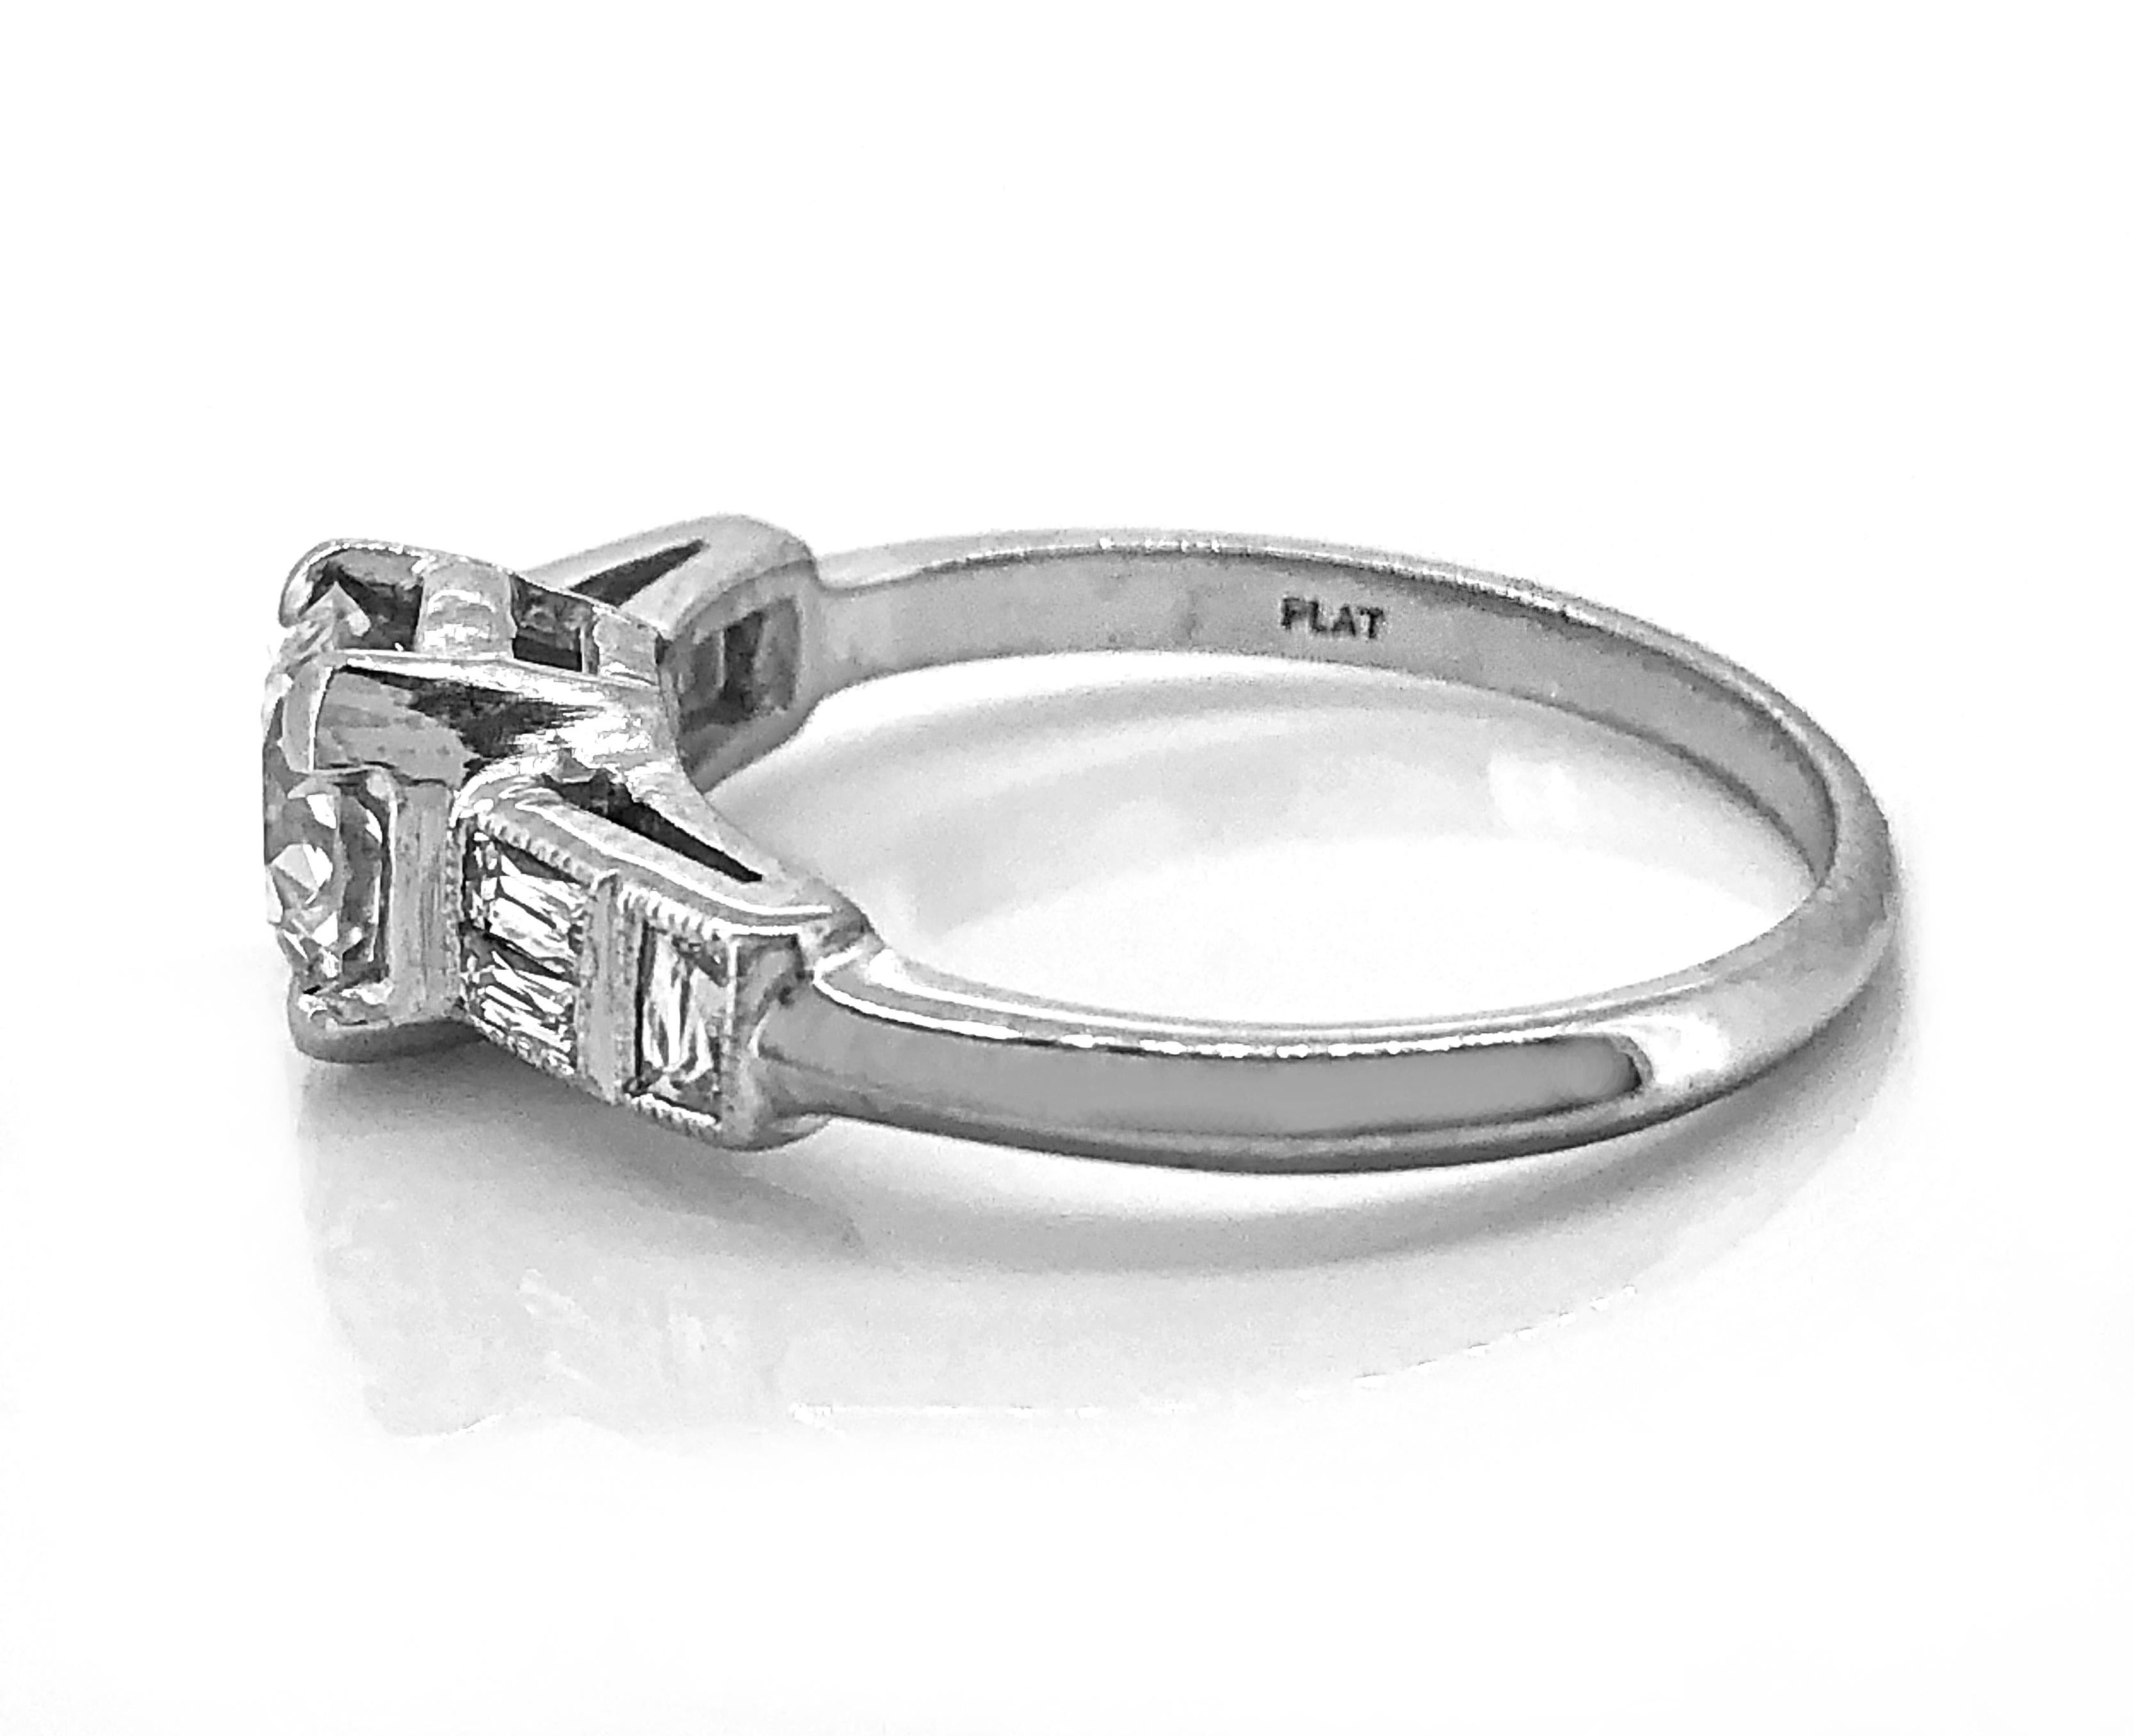 Revival Vintage Engagement Ring .85 Carat Diamond & Platinum Art Deco Style For Sale